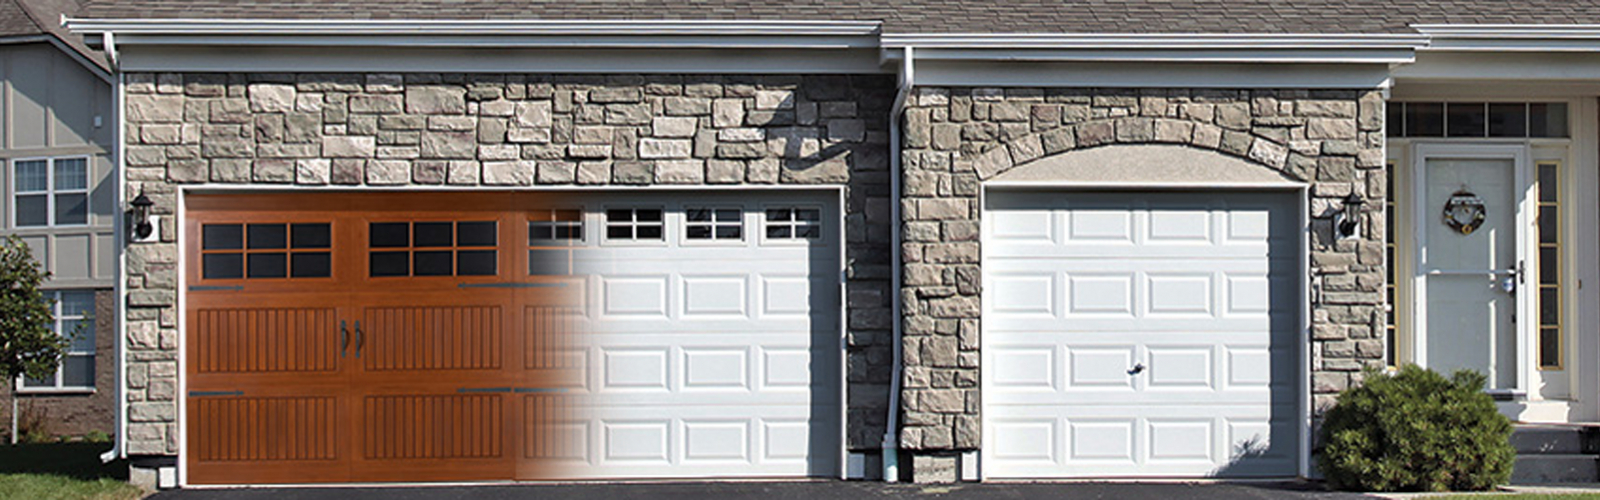 Overhead Door Company Of Conroe Garage Door Sales And Repair pertaining to measurements 1600 X 500